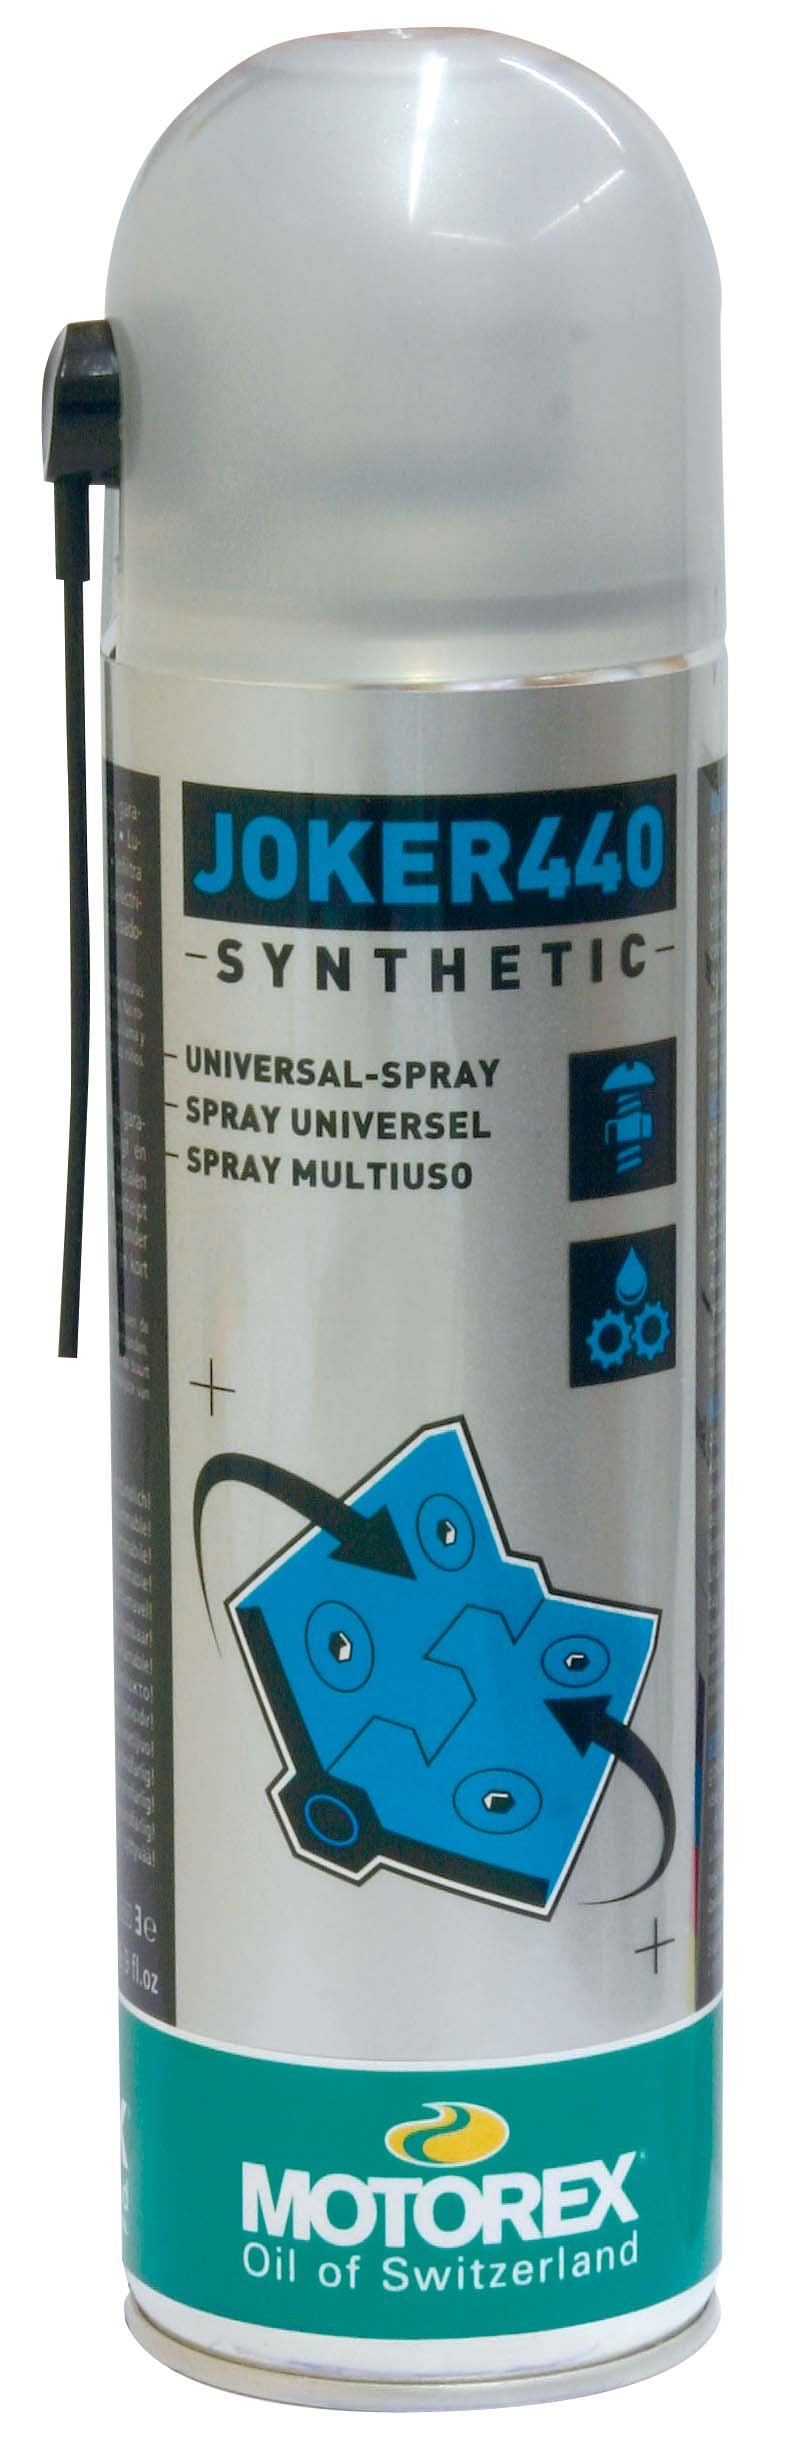 Motorex Joker 440 Universal Spray 0,5l von Motorex